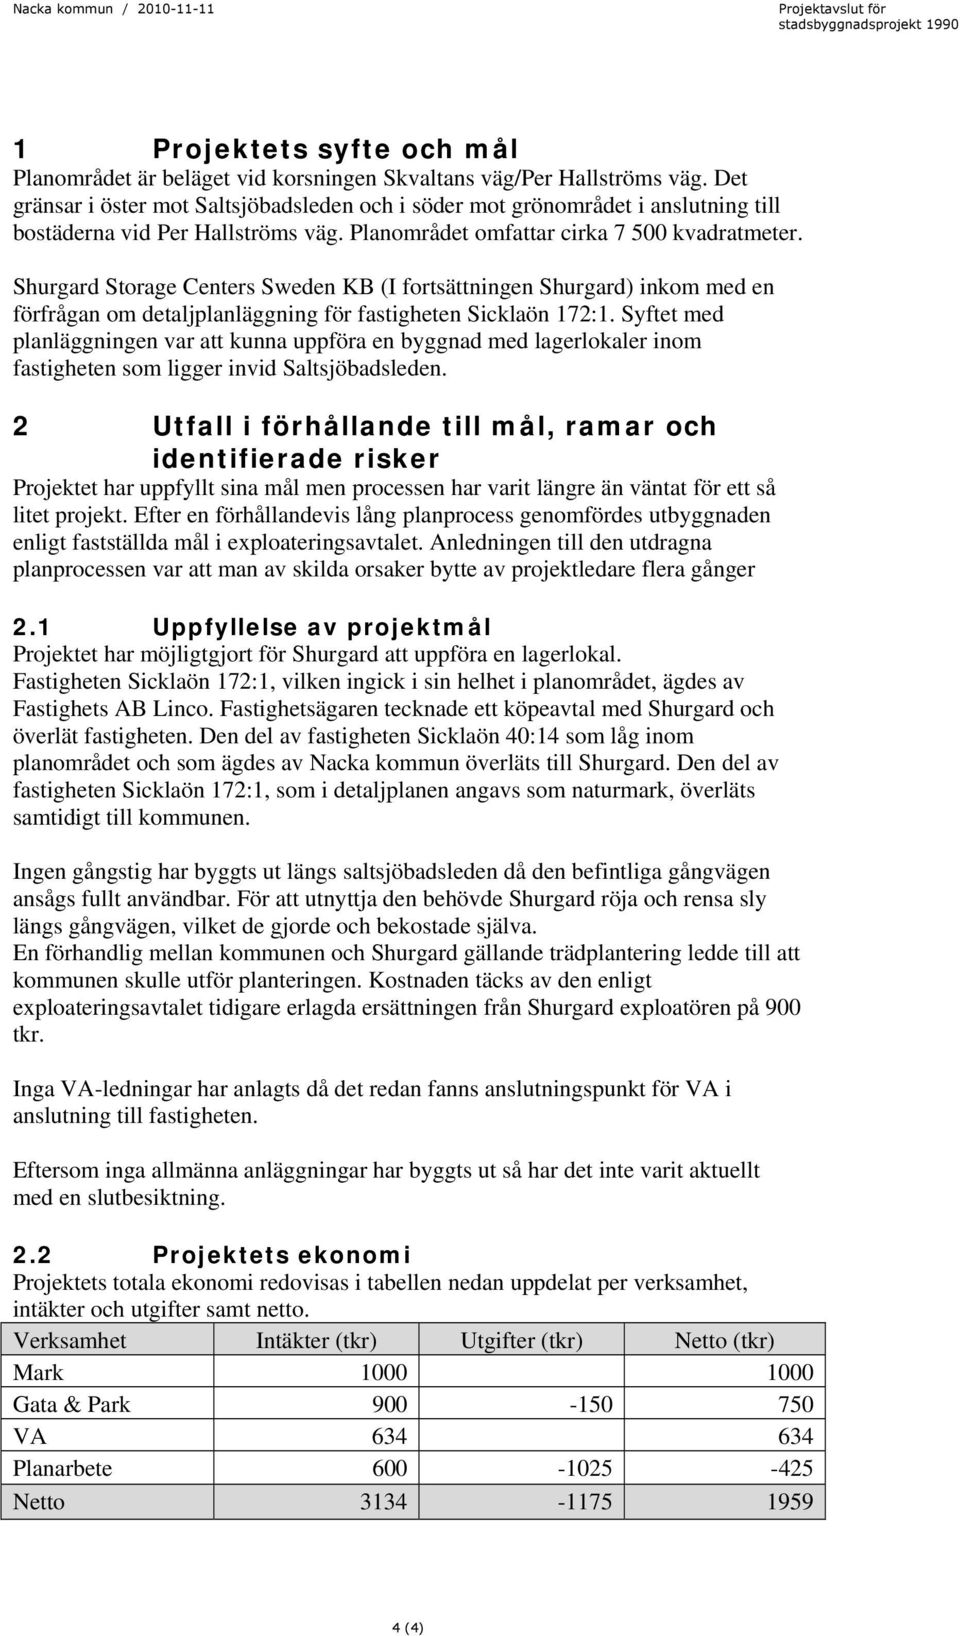 Shurgard Storage Centers Sweden KB (I fortsättningen Shurgard) inkom med en förfrågan om detaljplanläggning för fastigheten Sicklaön 172:1.